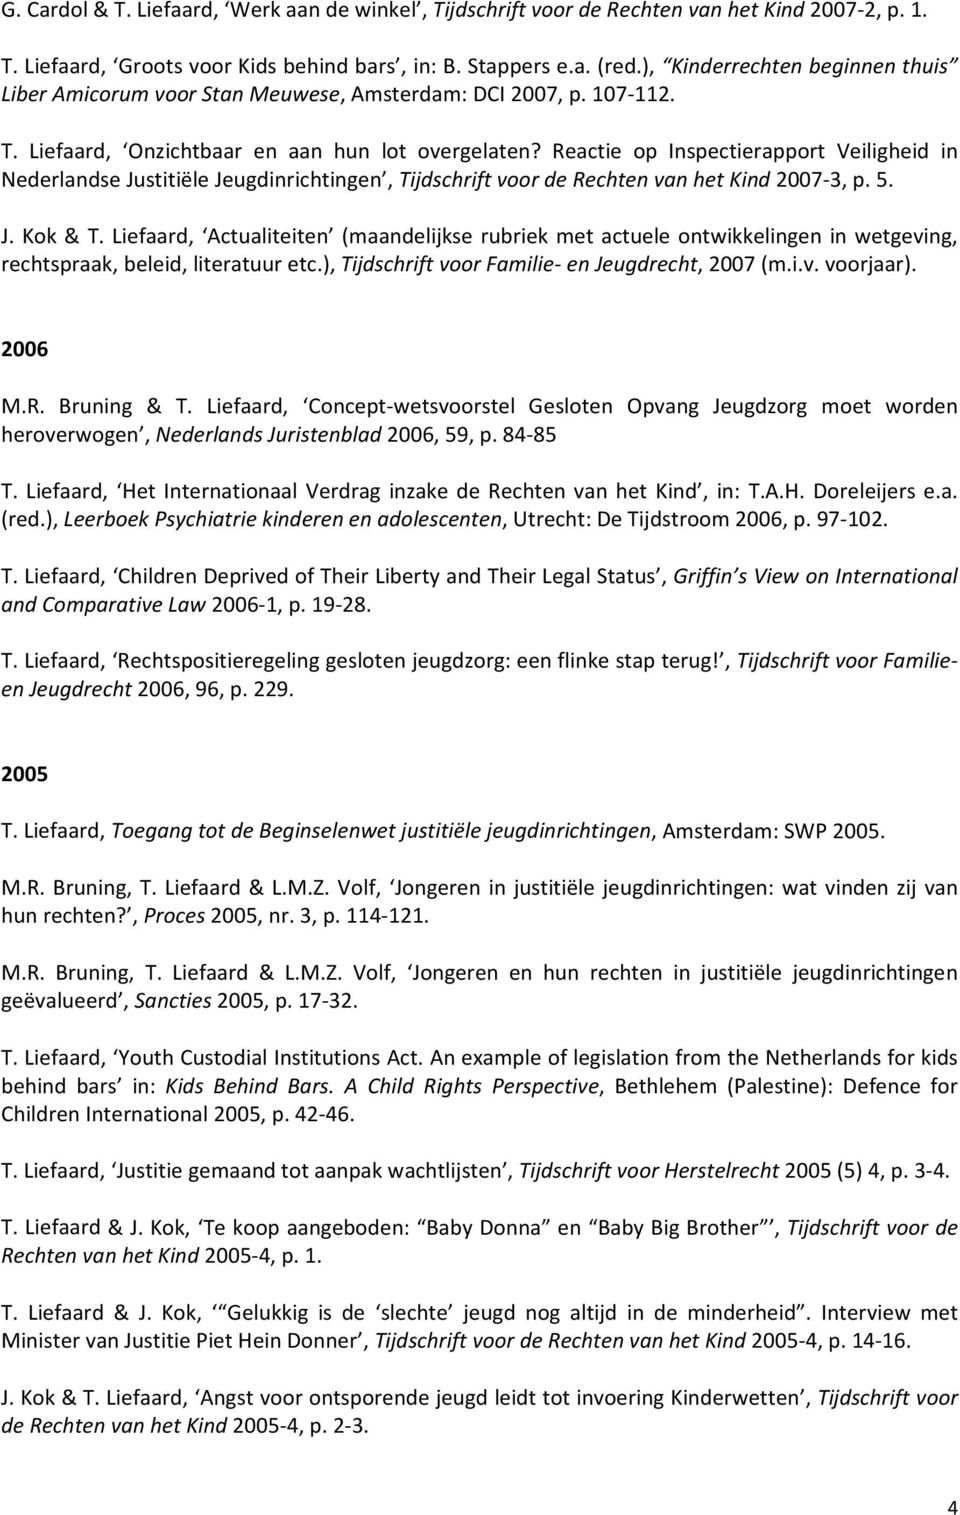 Reactie op Inspectierapport Veiligheid in Nederlandse Justitiële Jeugdinrichtingen, Tijdschrift voor de Rechten van het Kind 2007 3, p. 5. rechtspraak, beleid, literatuur etc.